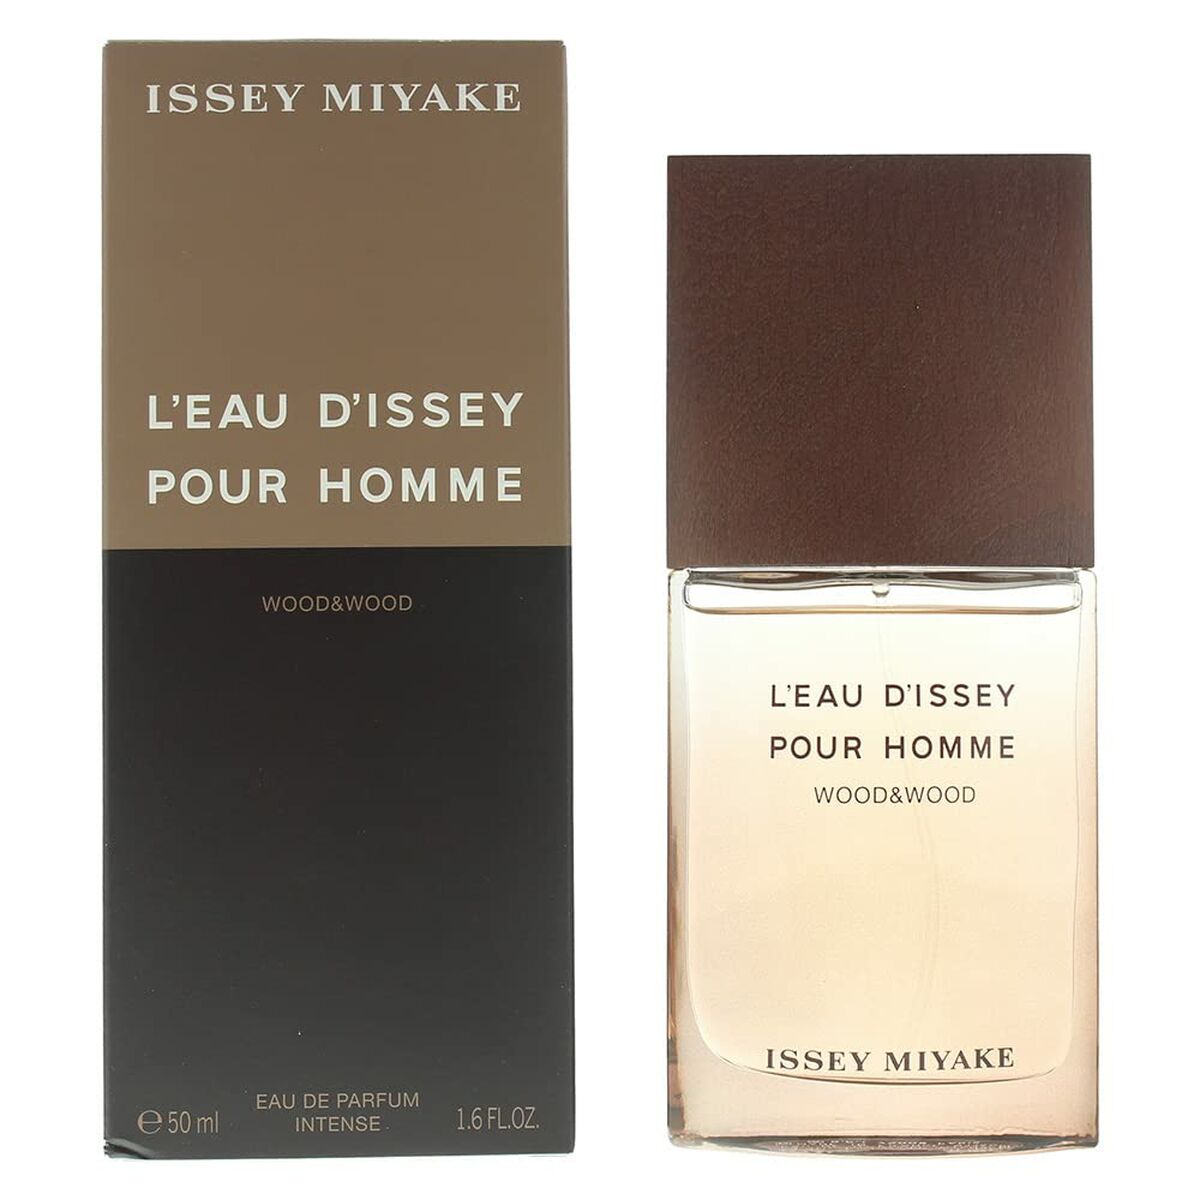 Pánský parfém Issey Miyake Edp l'eau d'Issey Pour Homme Wood & Wood 50 ml